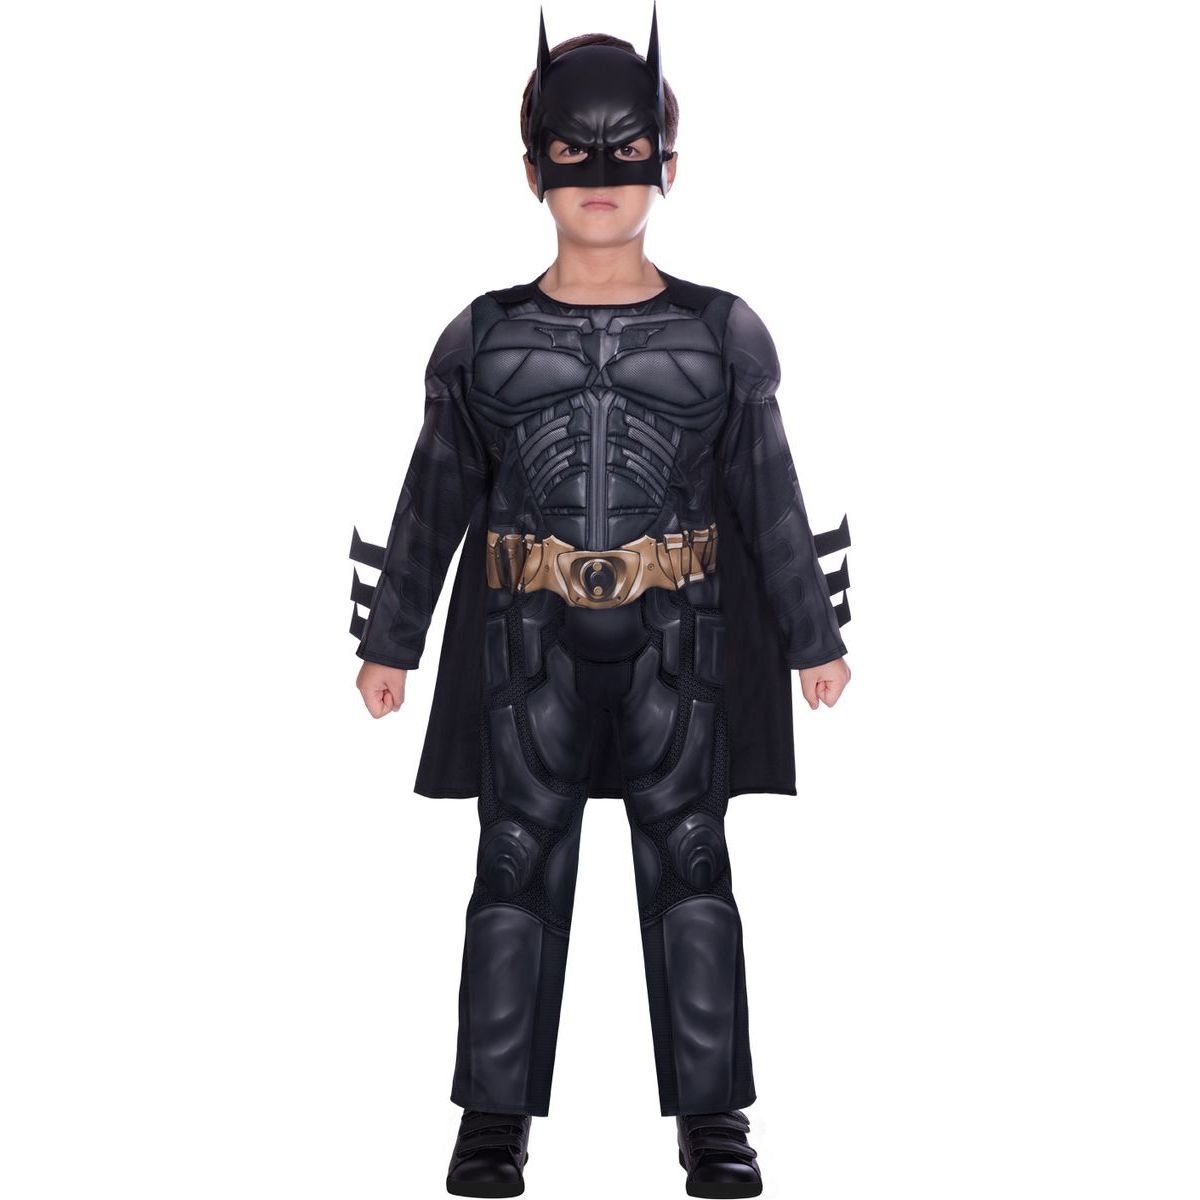 Epee Dětský kostým Batman Dark Knight 6-8 let